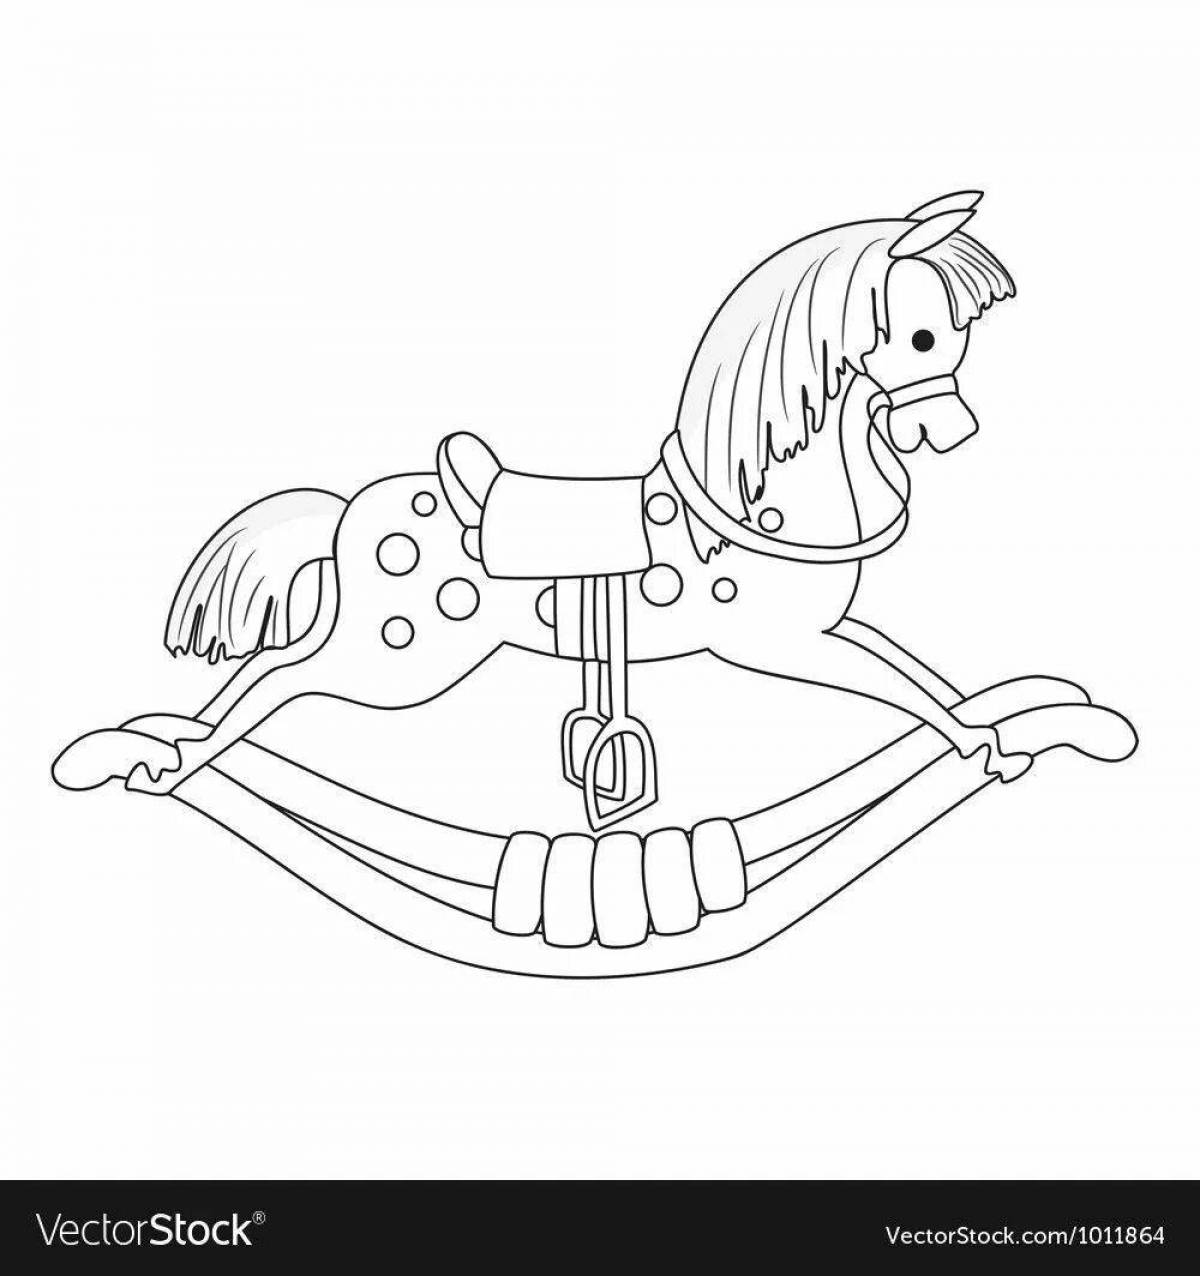 Увлекательная раскраска лошадка-качалка для дошкольников